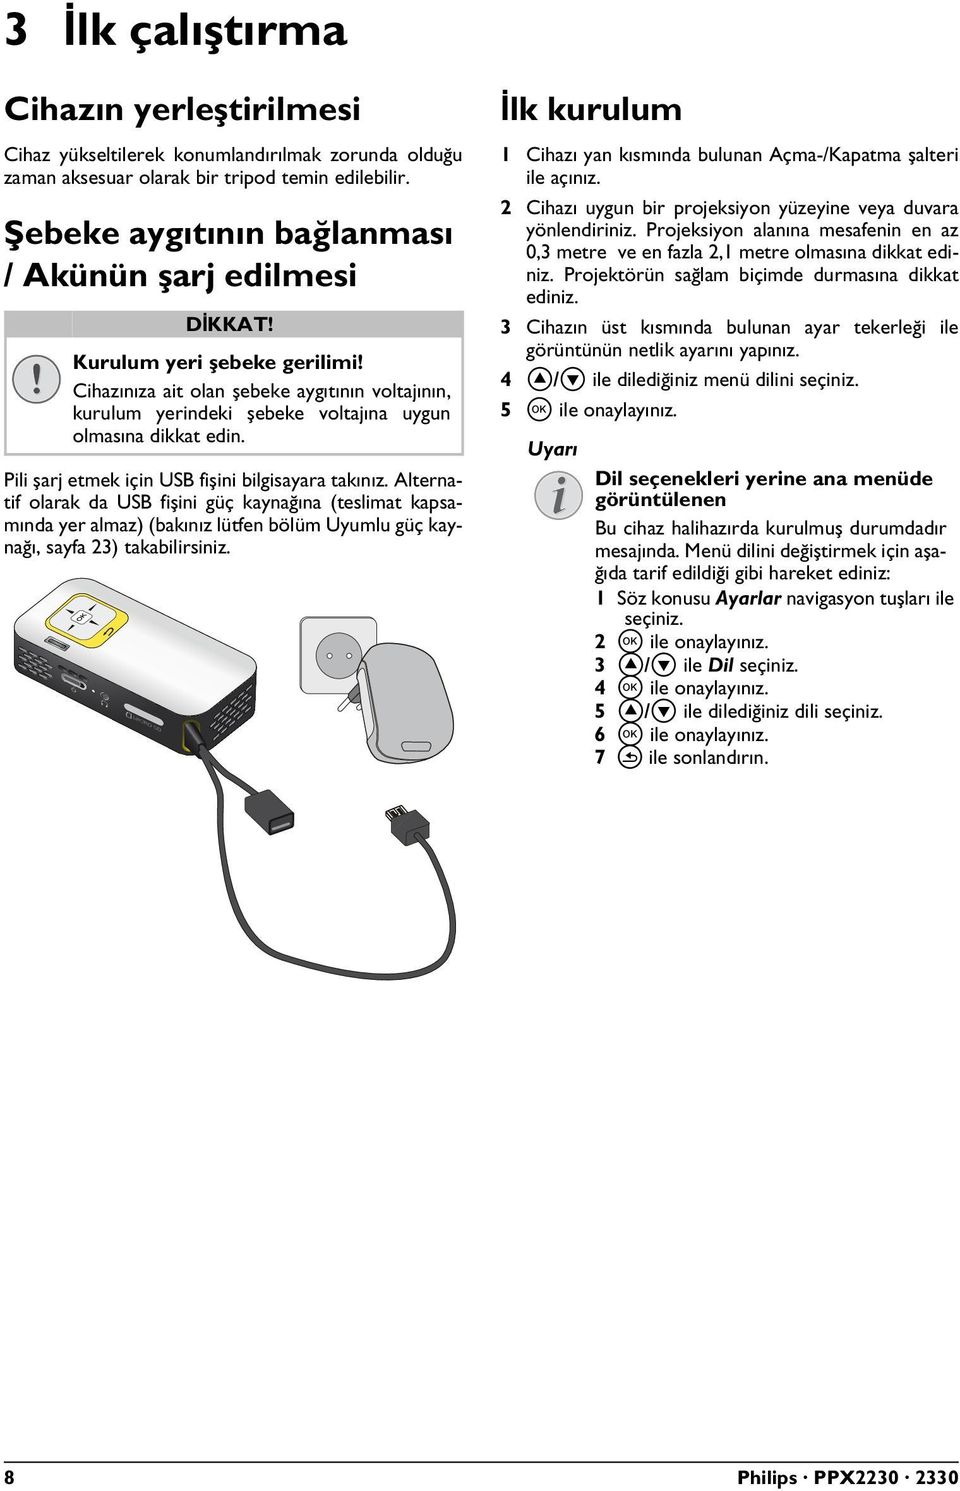 Pili şarj etmek için USB fişini bilgisayara takınız. Alternatif olarak da USB fişini güç kaynağına (teslimat kapsamında yer almaz) (bakınız lütfen bölüm Uyumlu güç kaynağı, sayfa 23) takabilirsiniz.